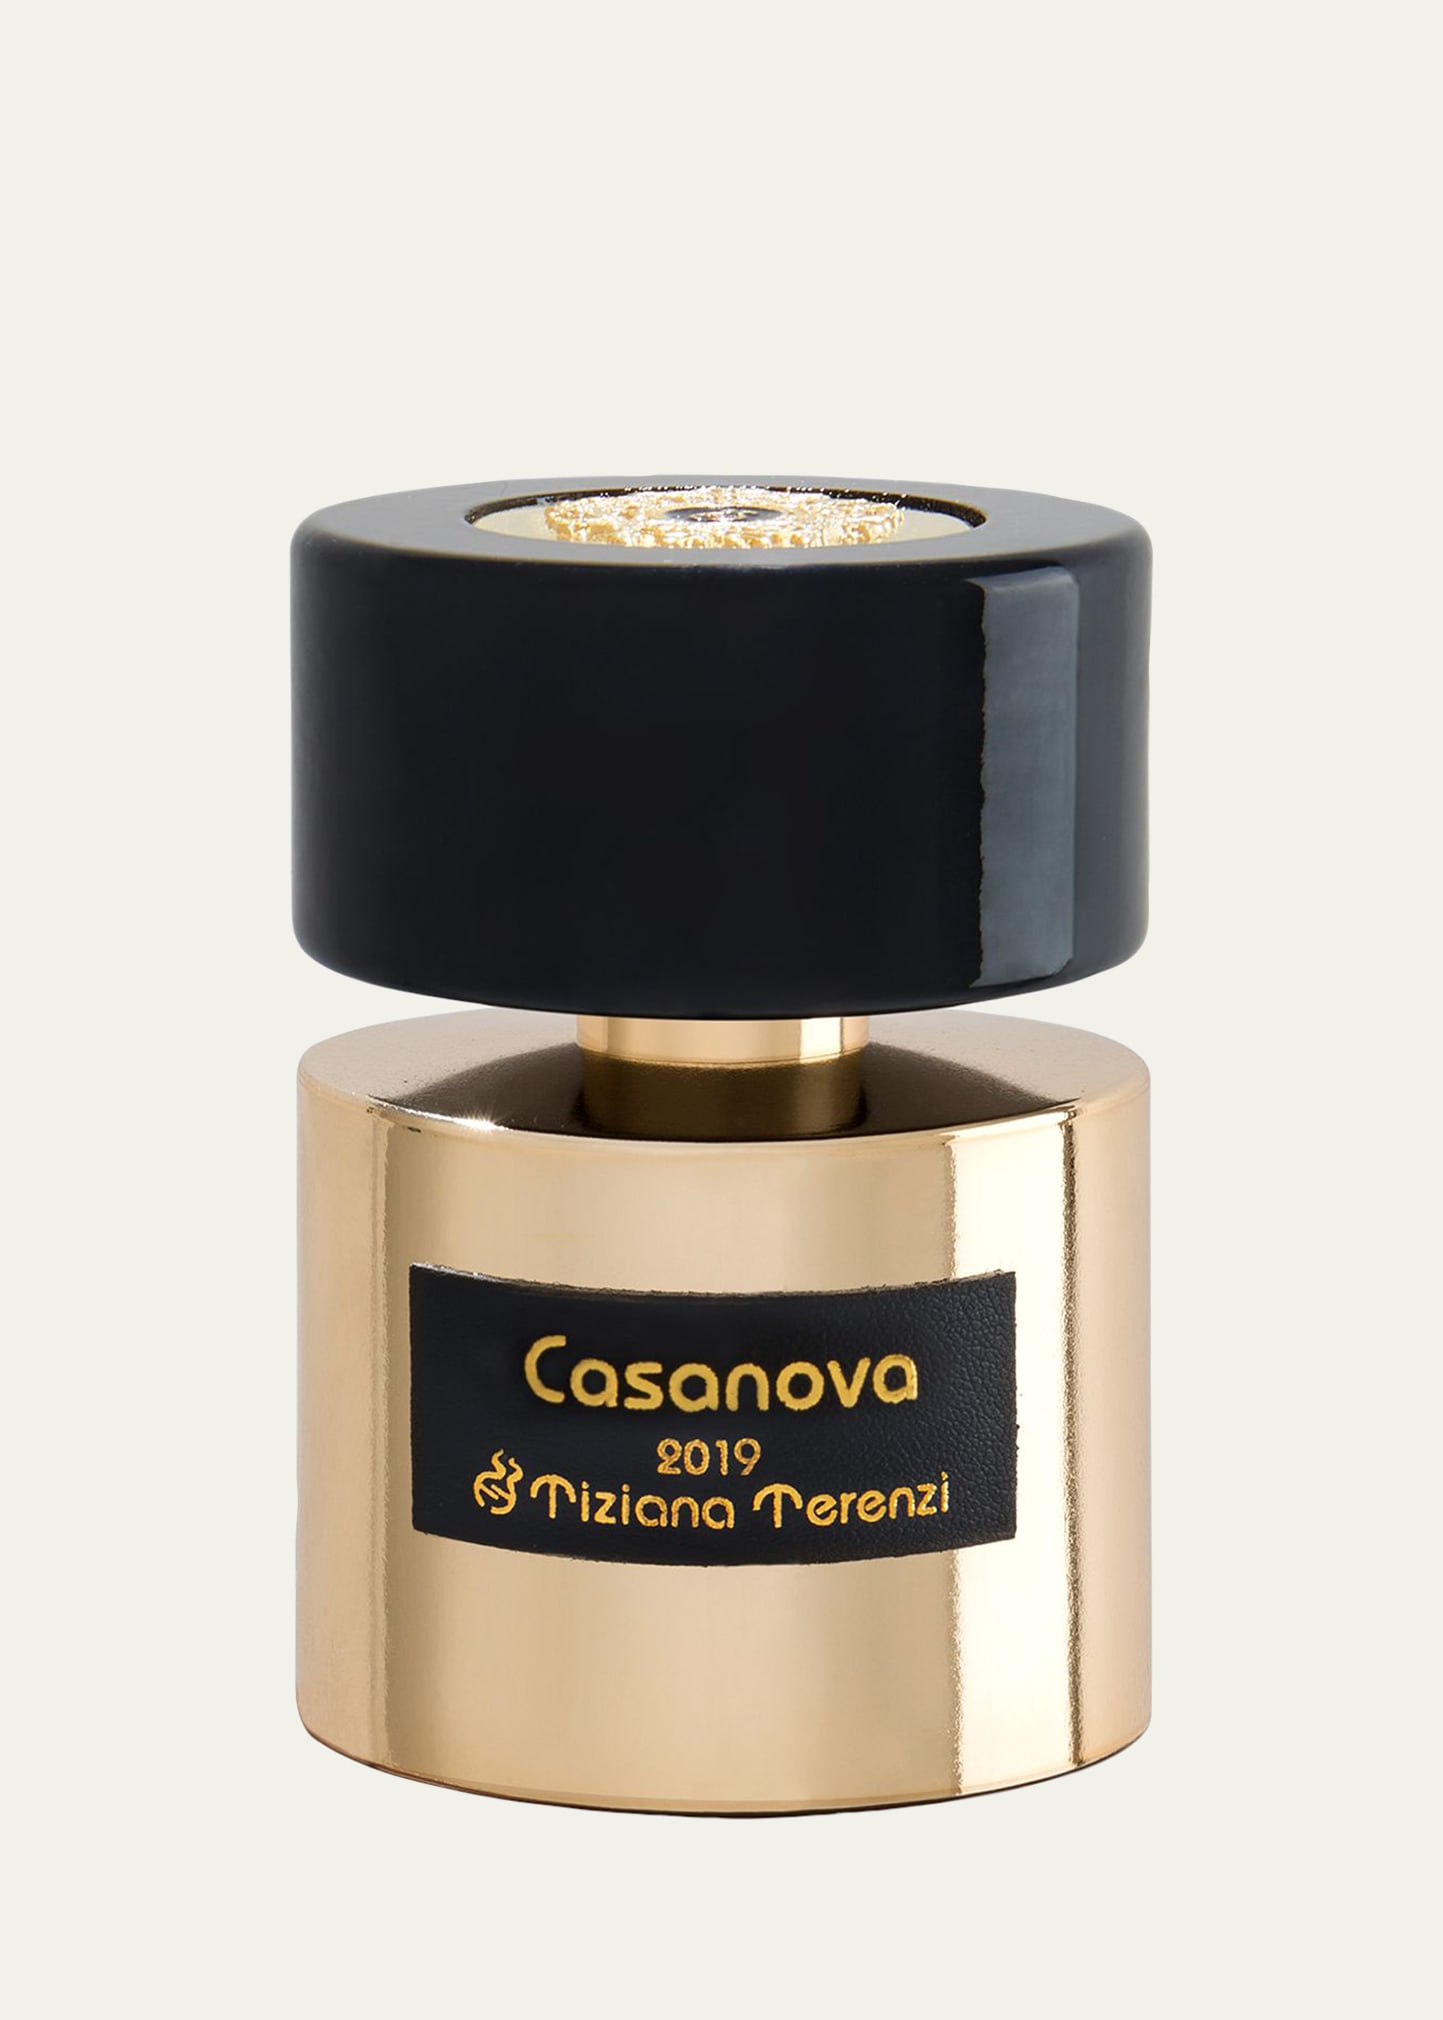 Casanova 2019 Anniversary Extrait de Parfum, 3.4 oz.